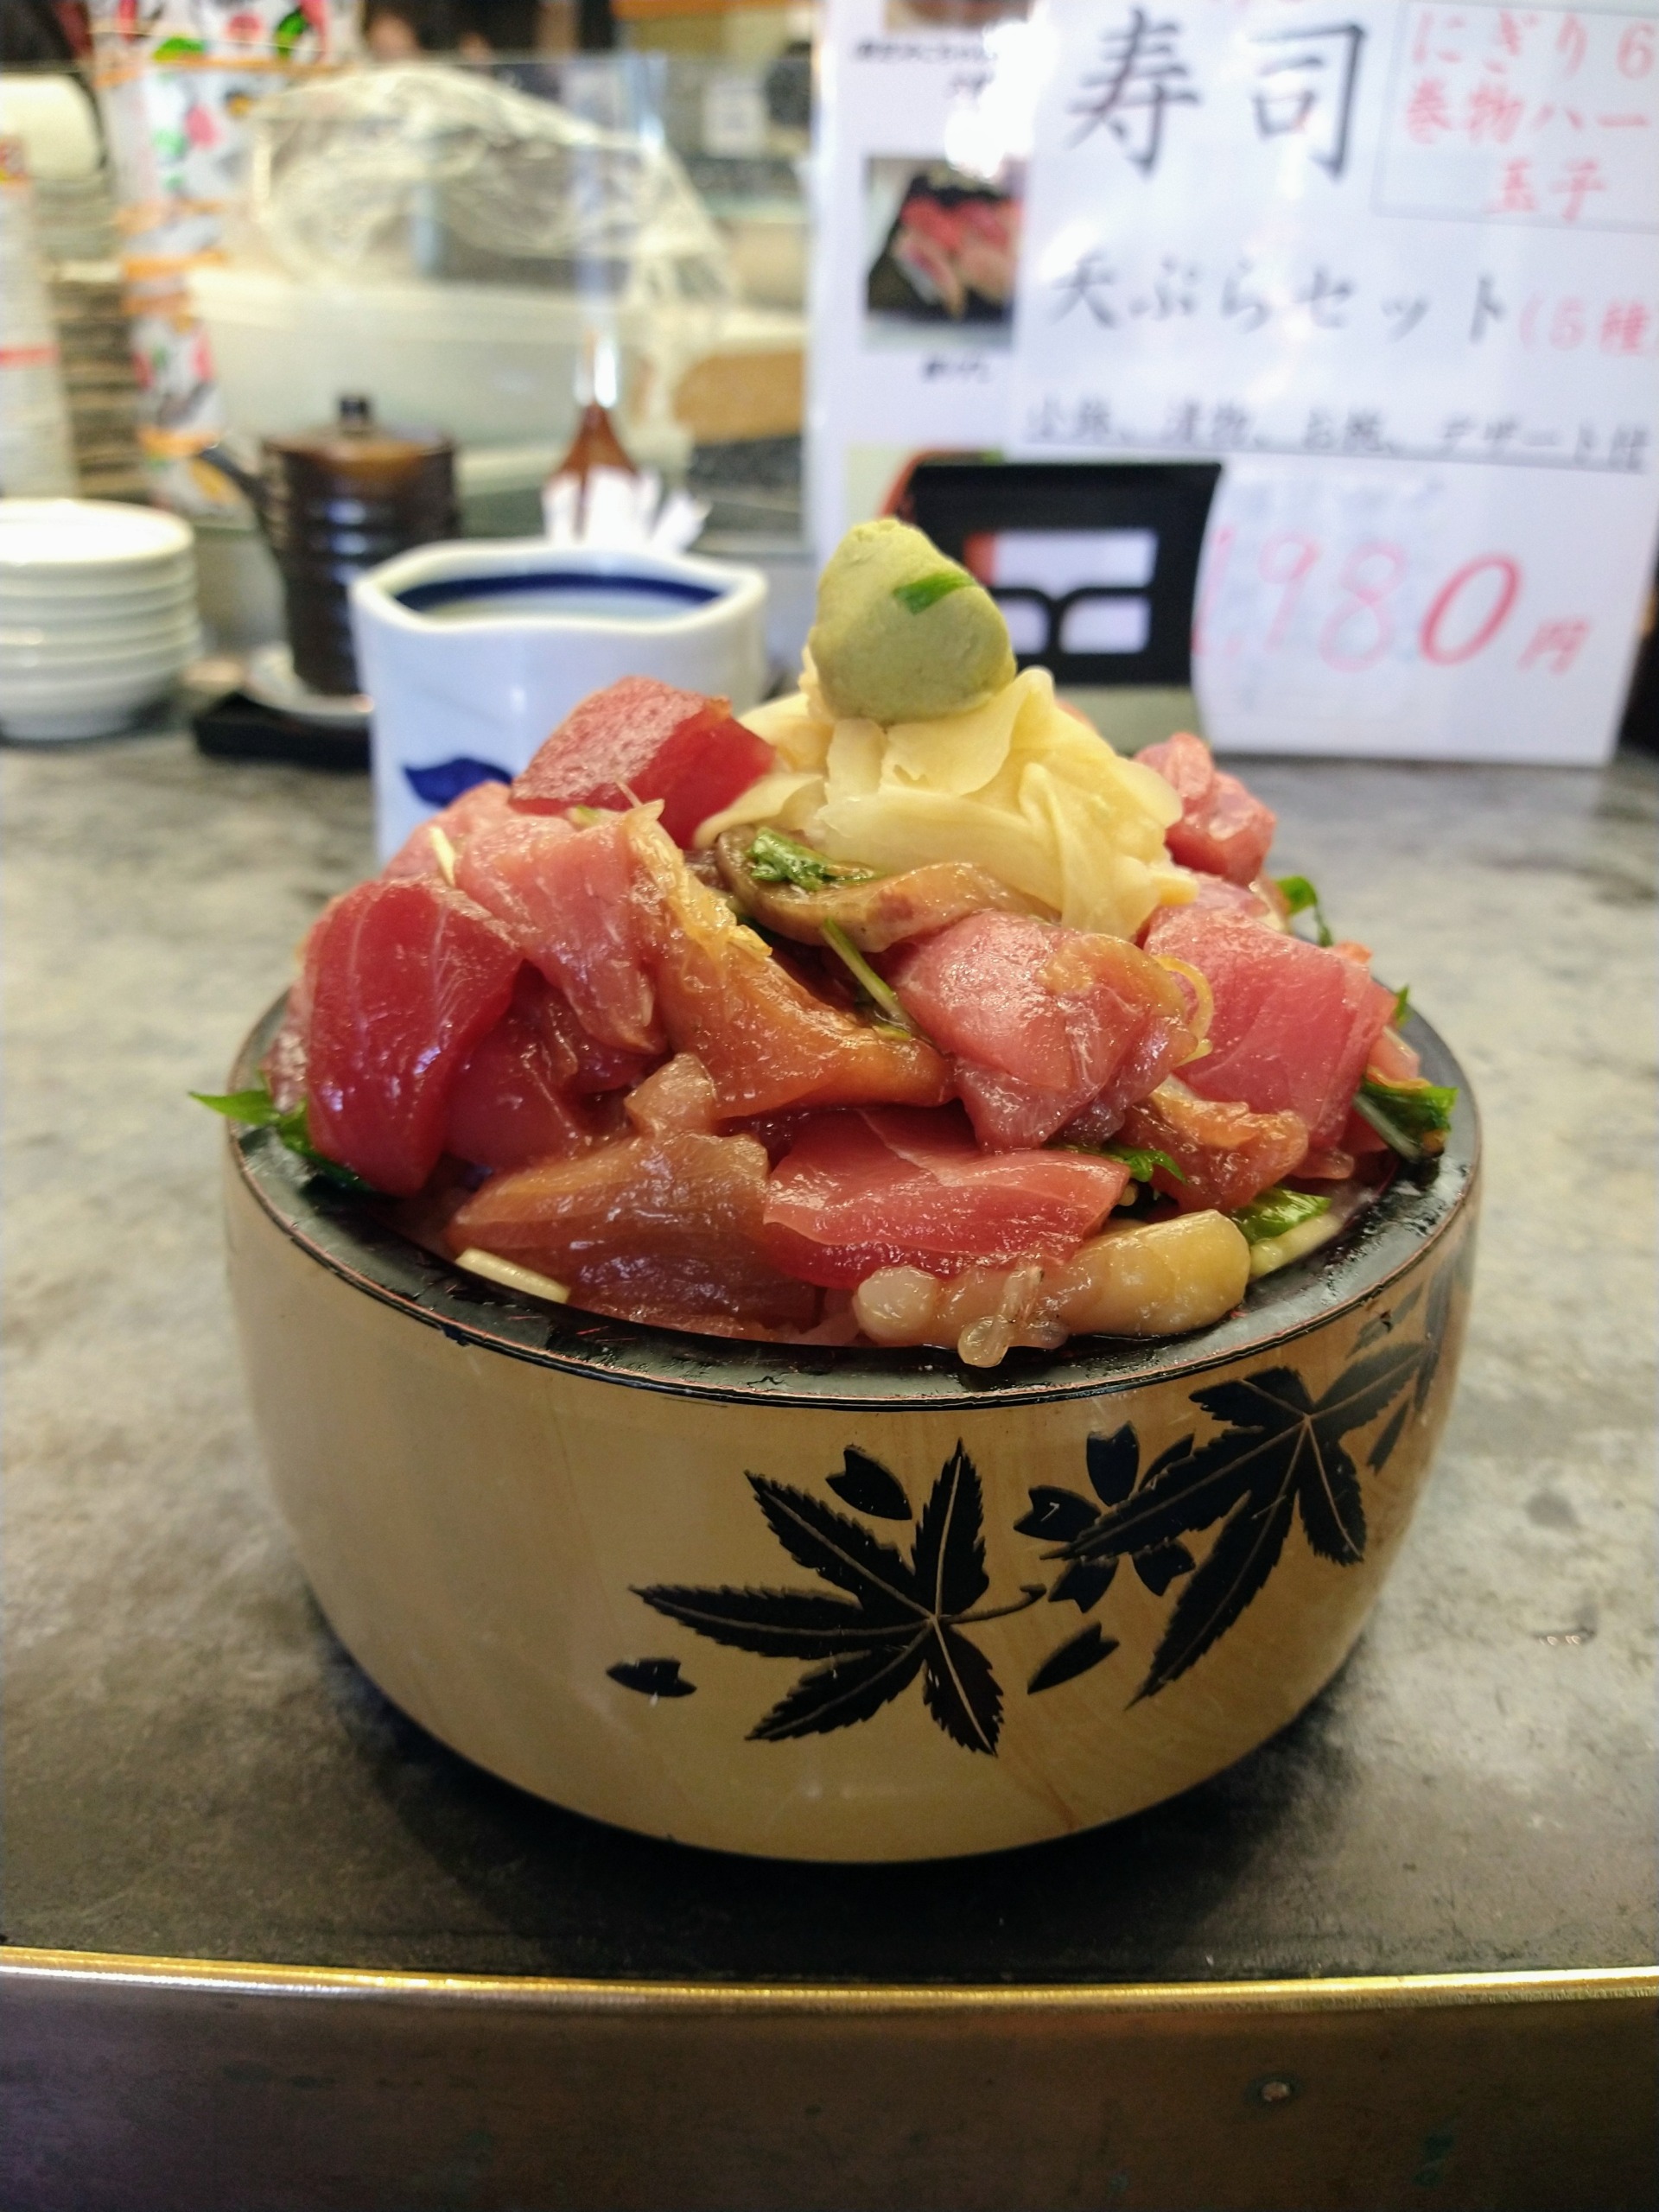 mikore-sushi-cuisine-12